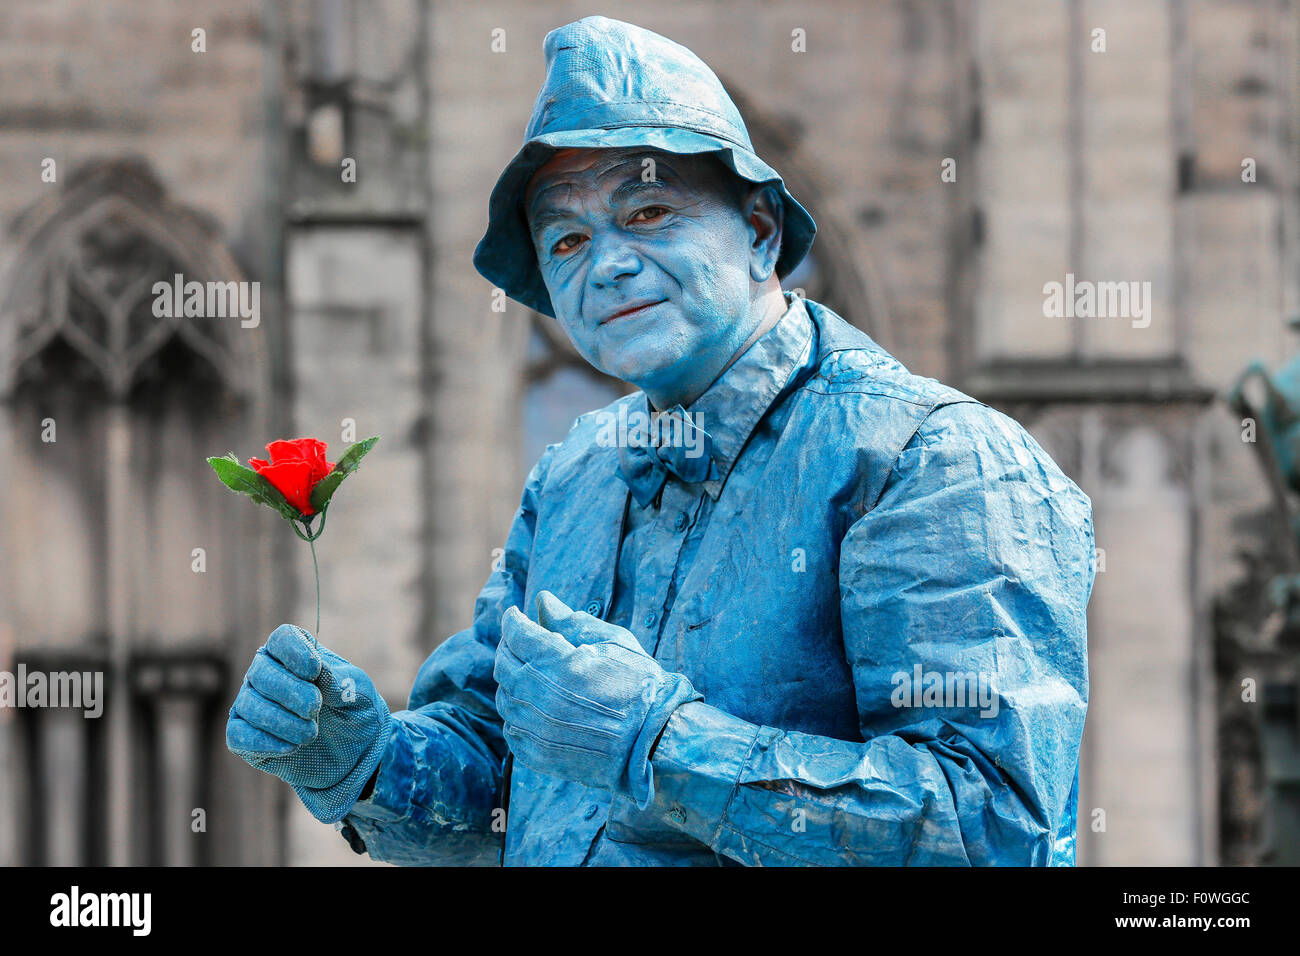 Nebojsa desde Serbia, actor, como una estatua en la calle Royal Mile, durante el Festival Fringe de Edimburgo, Escocia, Reino Unido Foto de stock